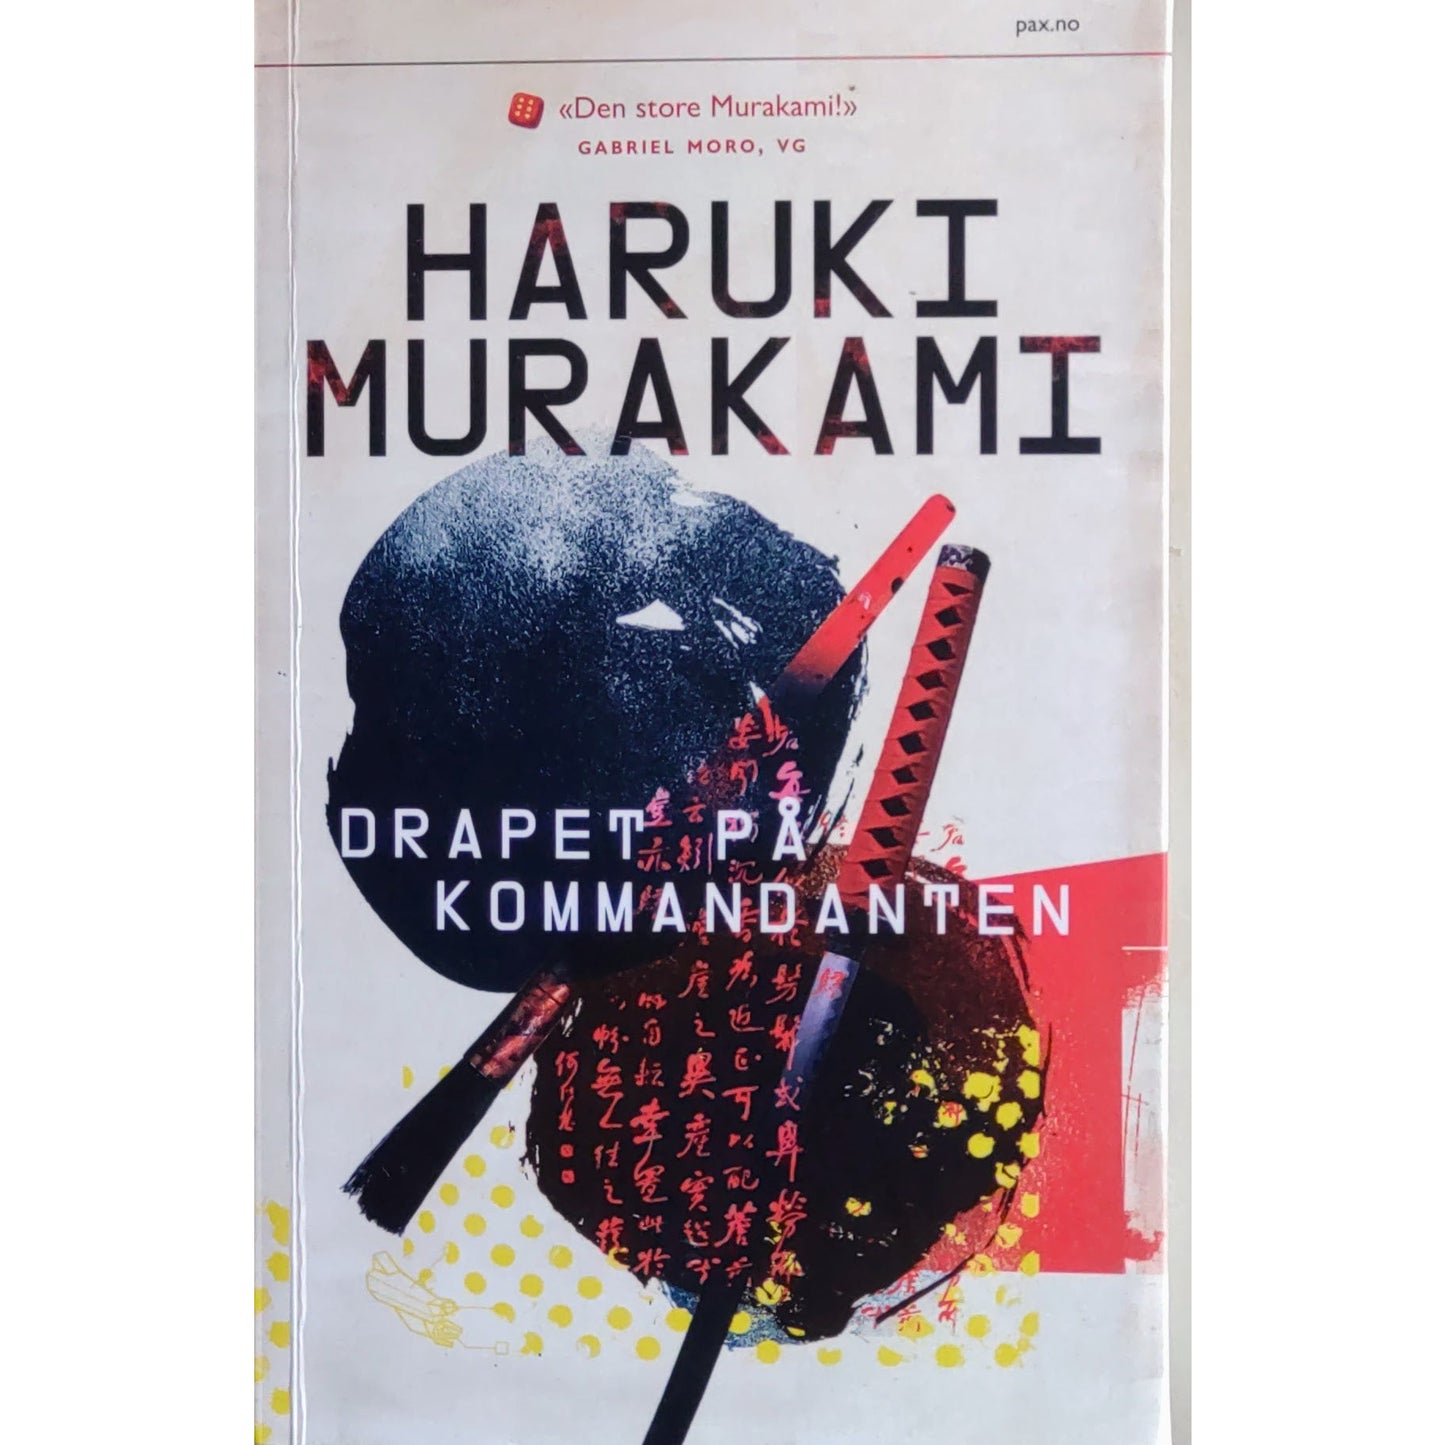 Drapet på kommandanten, brukte bøker av Haruki Murakami